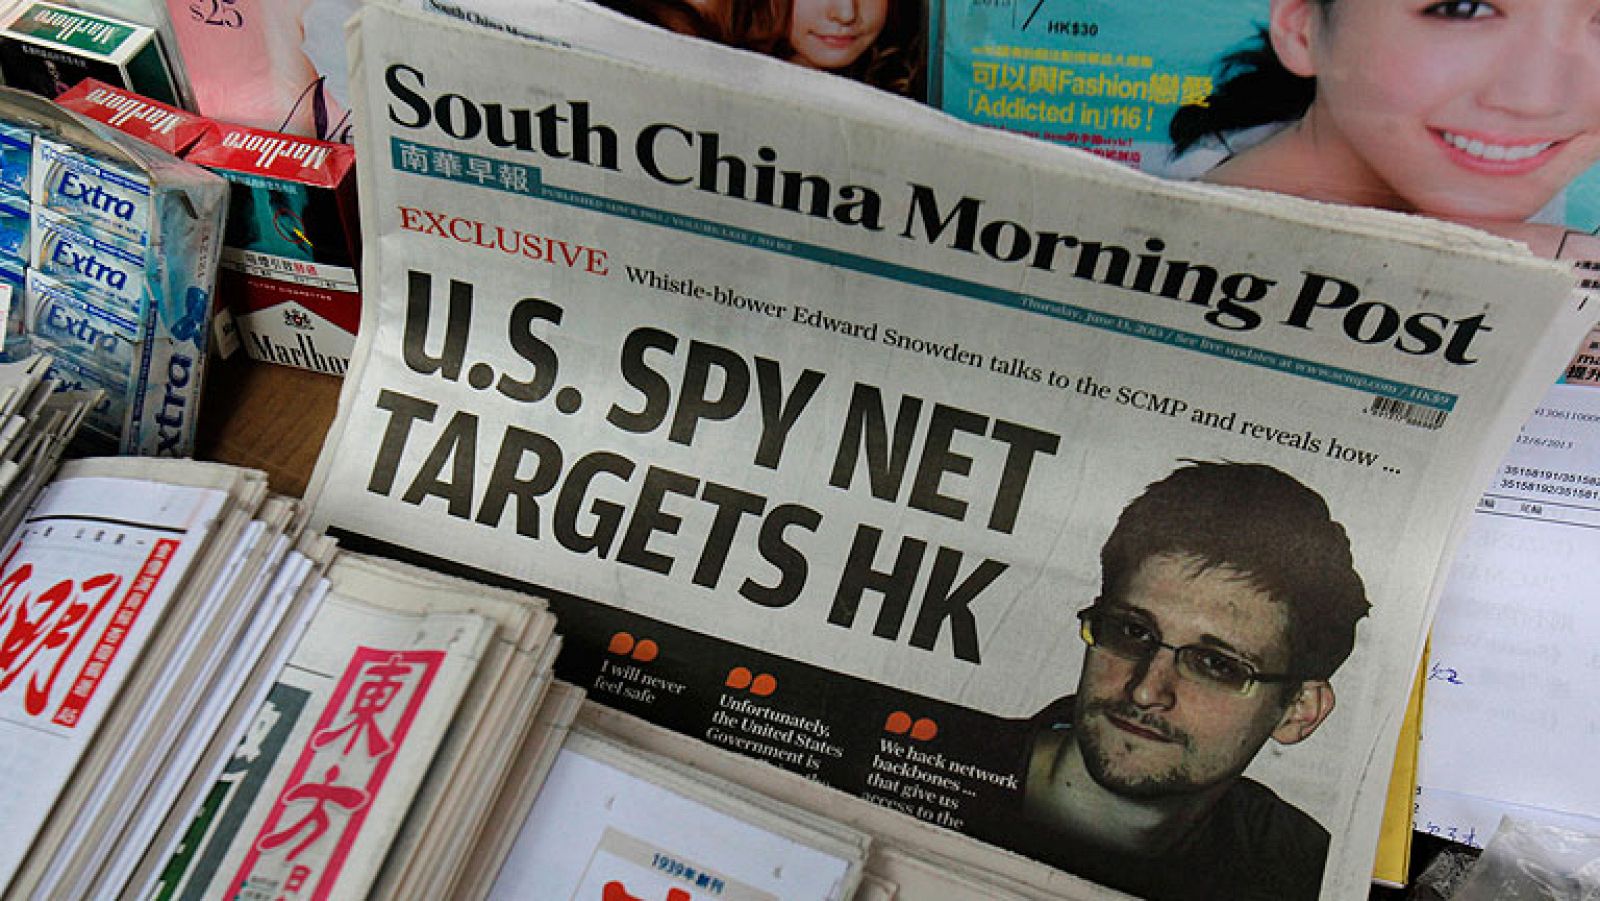  Las autoridades de Estados Unidos han abierto una investigación penal y harán lo posible para detener a Edwar Snowden, un excolaborador suyo que ha filtrado un programa de espionaje masivo, según ha anunciado el director del FBI, Robert Mueller. 